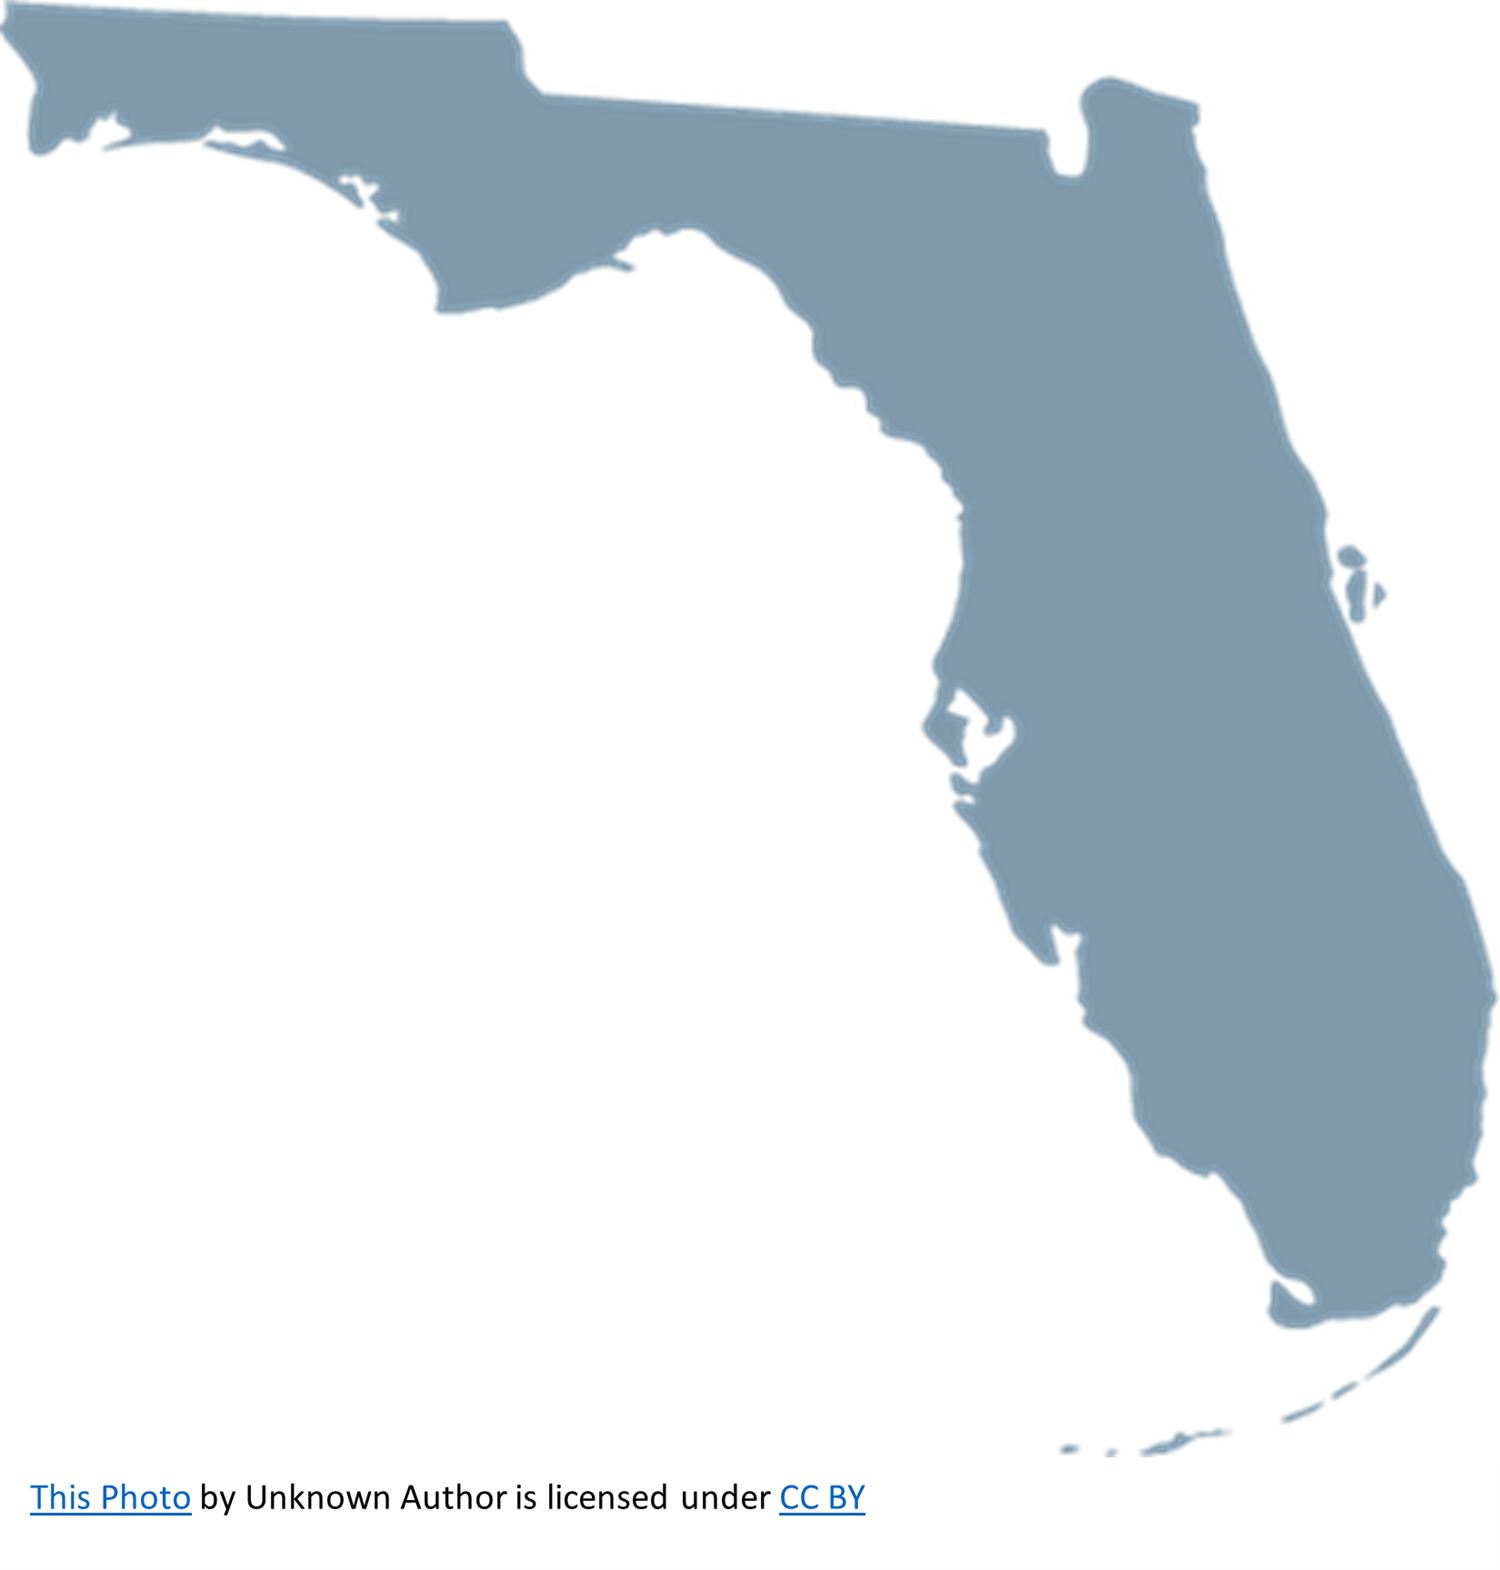 Florida South Bound 2023-2024 on jun. 10, 10:00@Florida - Elegir asientoCompra entradas y obtén información enCrossroad Tours Inc. crossroadtours